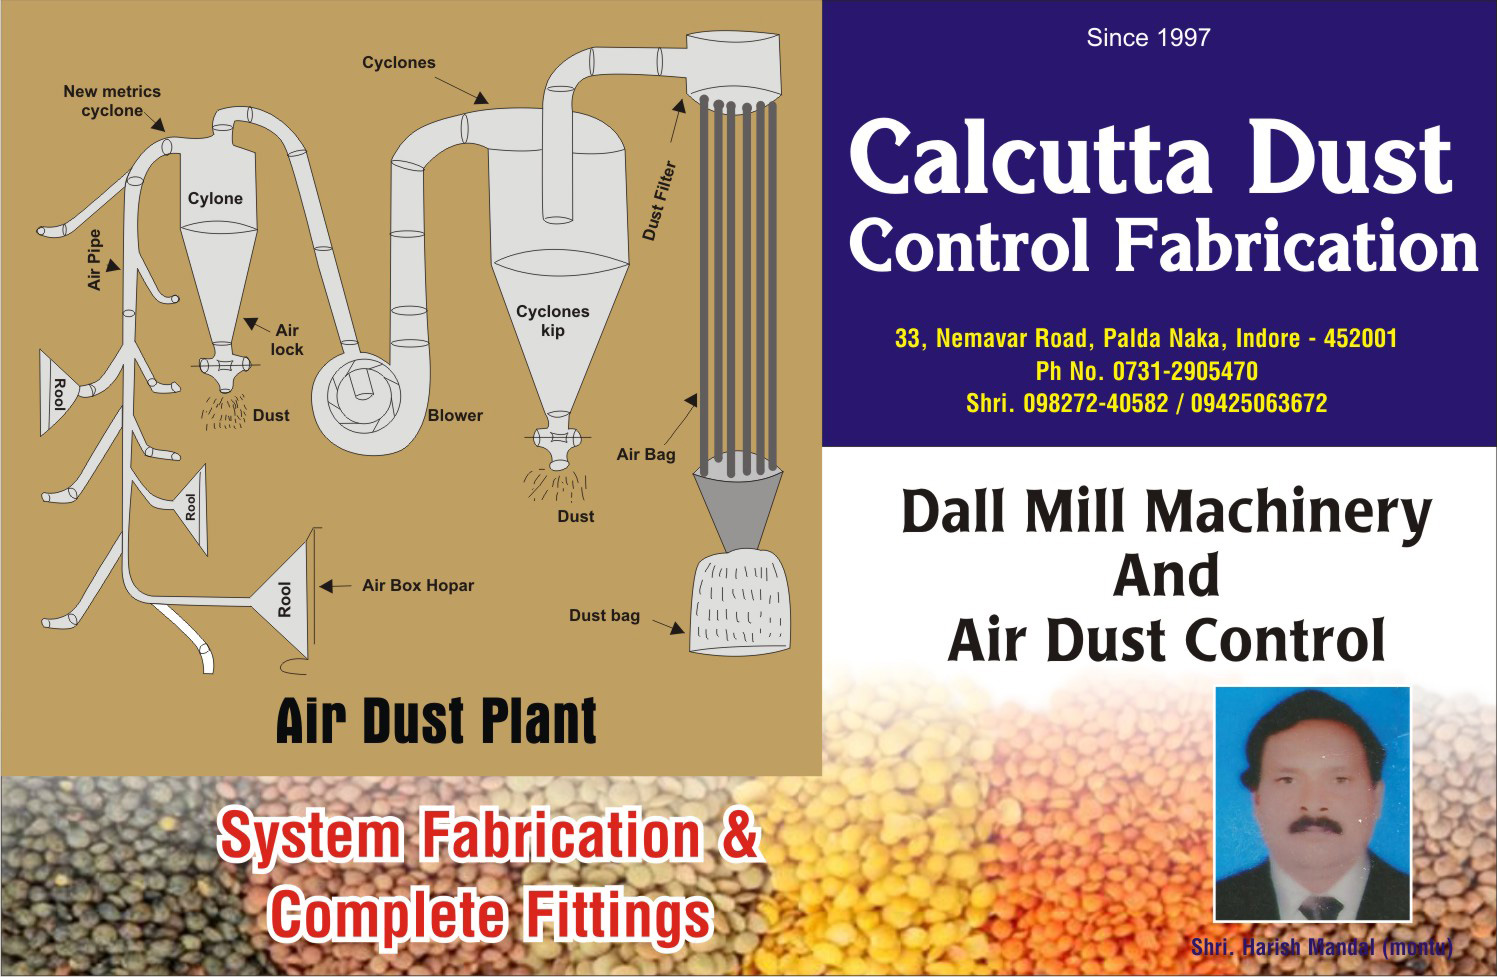 Culcutta Dust Control Fabrication